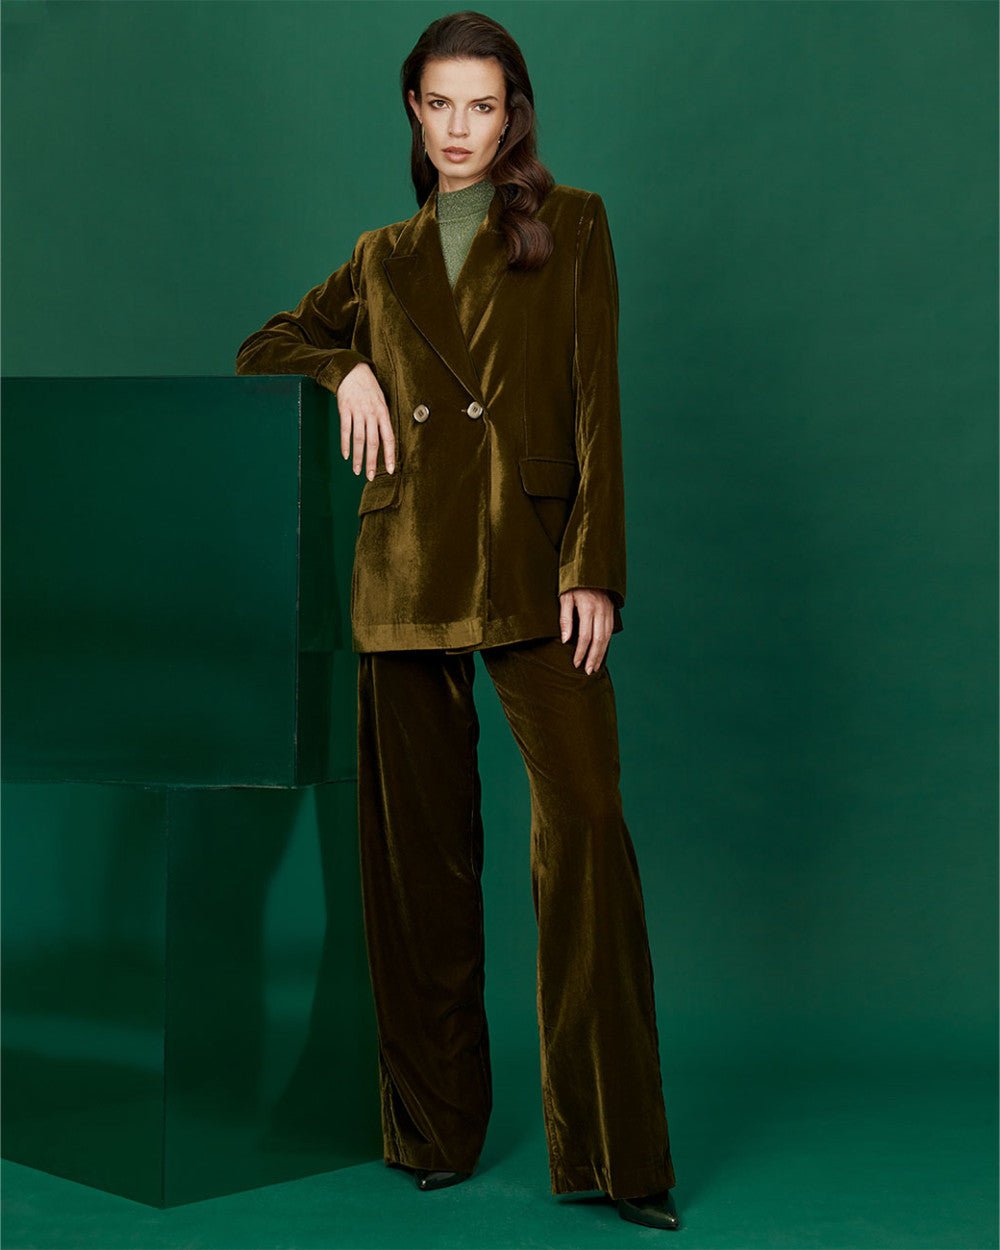 Κοστούμι σακάκι πανντελόνι βελουτέ Access Fashion - A Collection Boutique